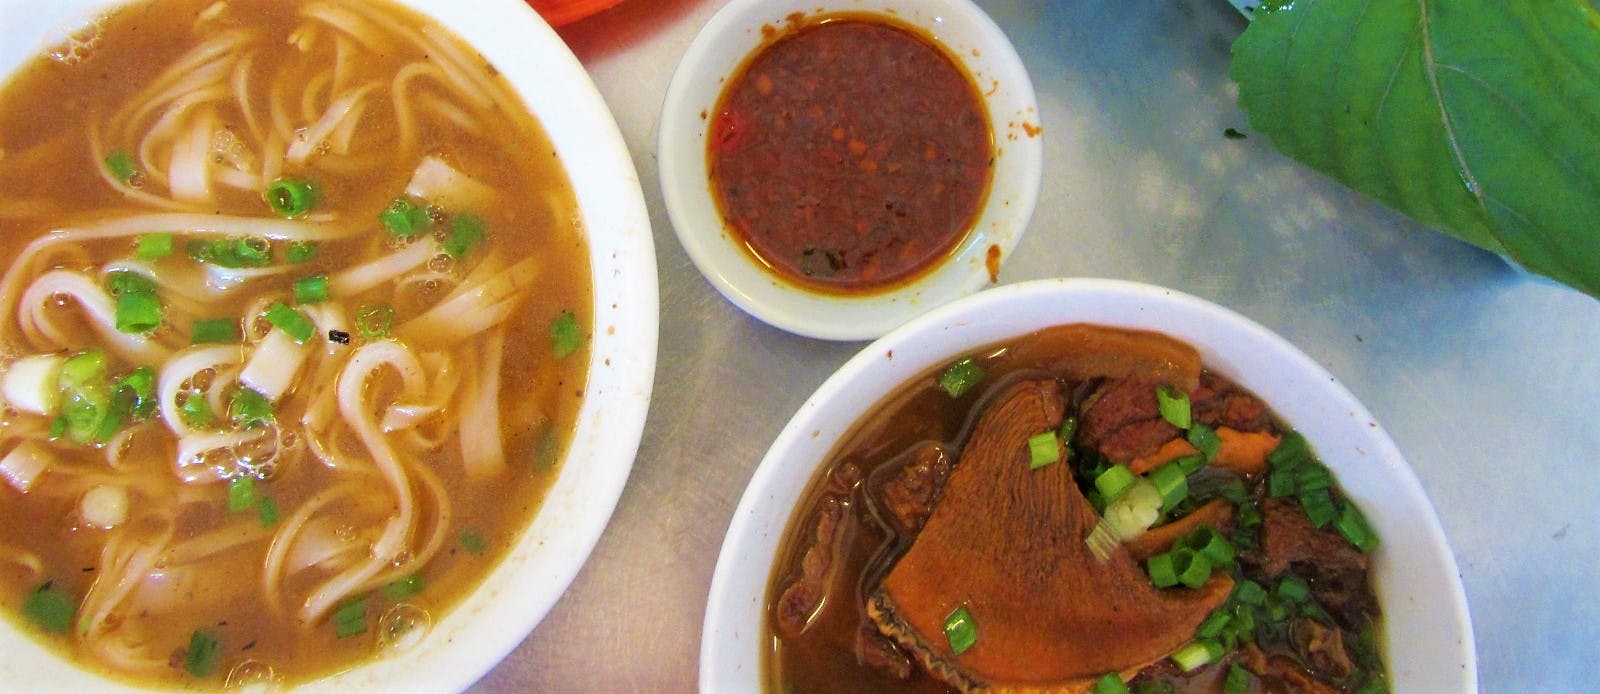 Goat noodle soup in Chinatown, Saigon